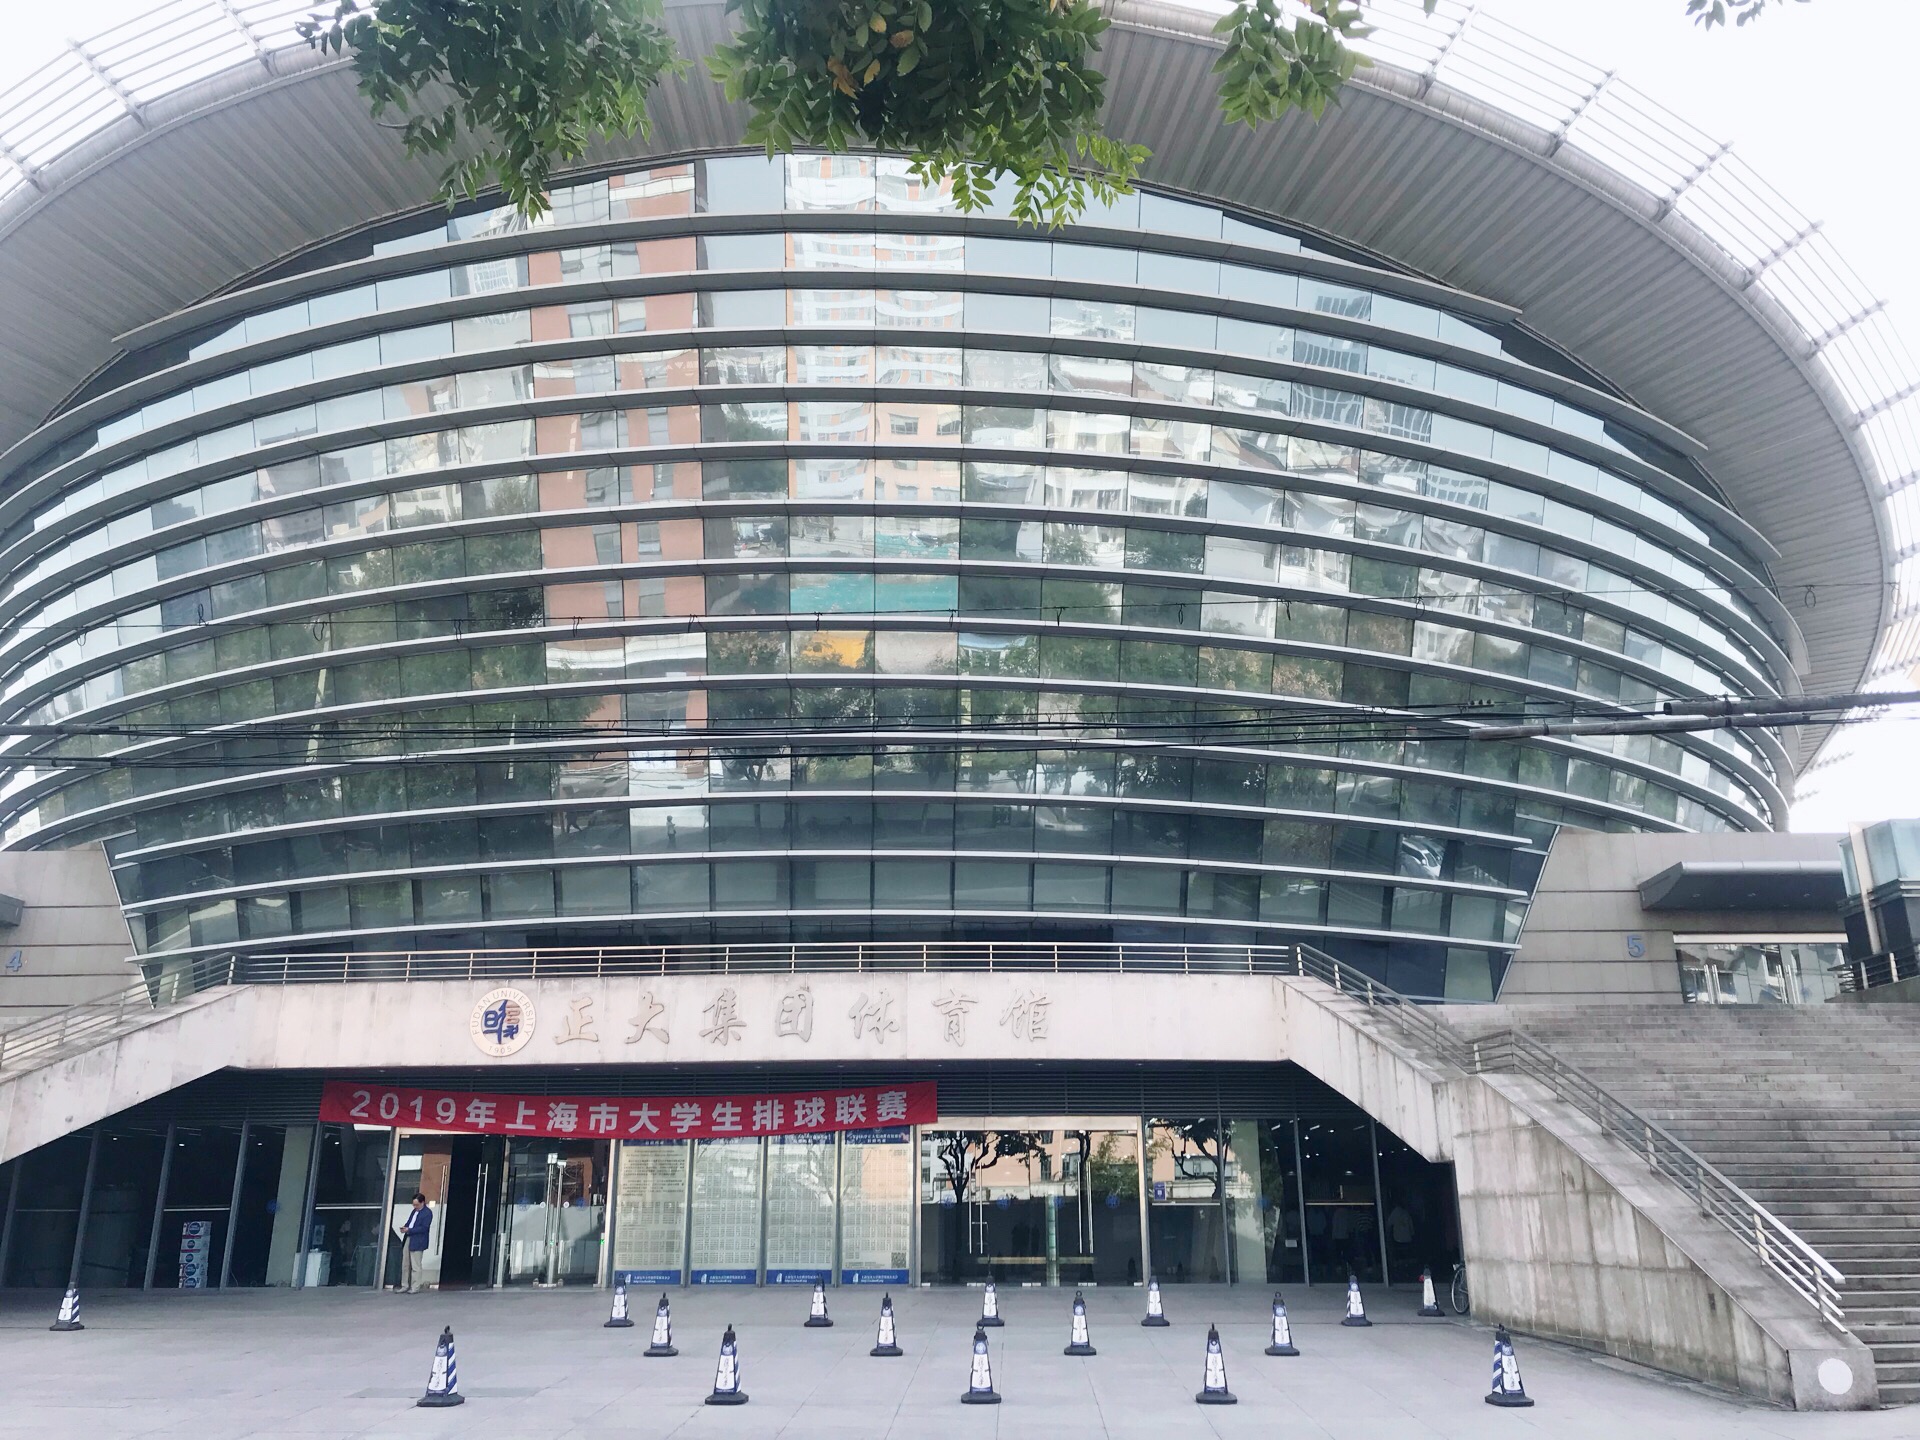 2019复旦大学_旅游攻略_门票_地址_游记点评,上海旅游景点推荐 - 去哪儿攻略社区